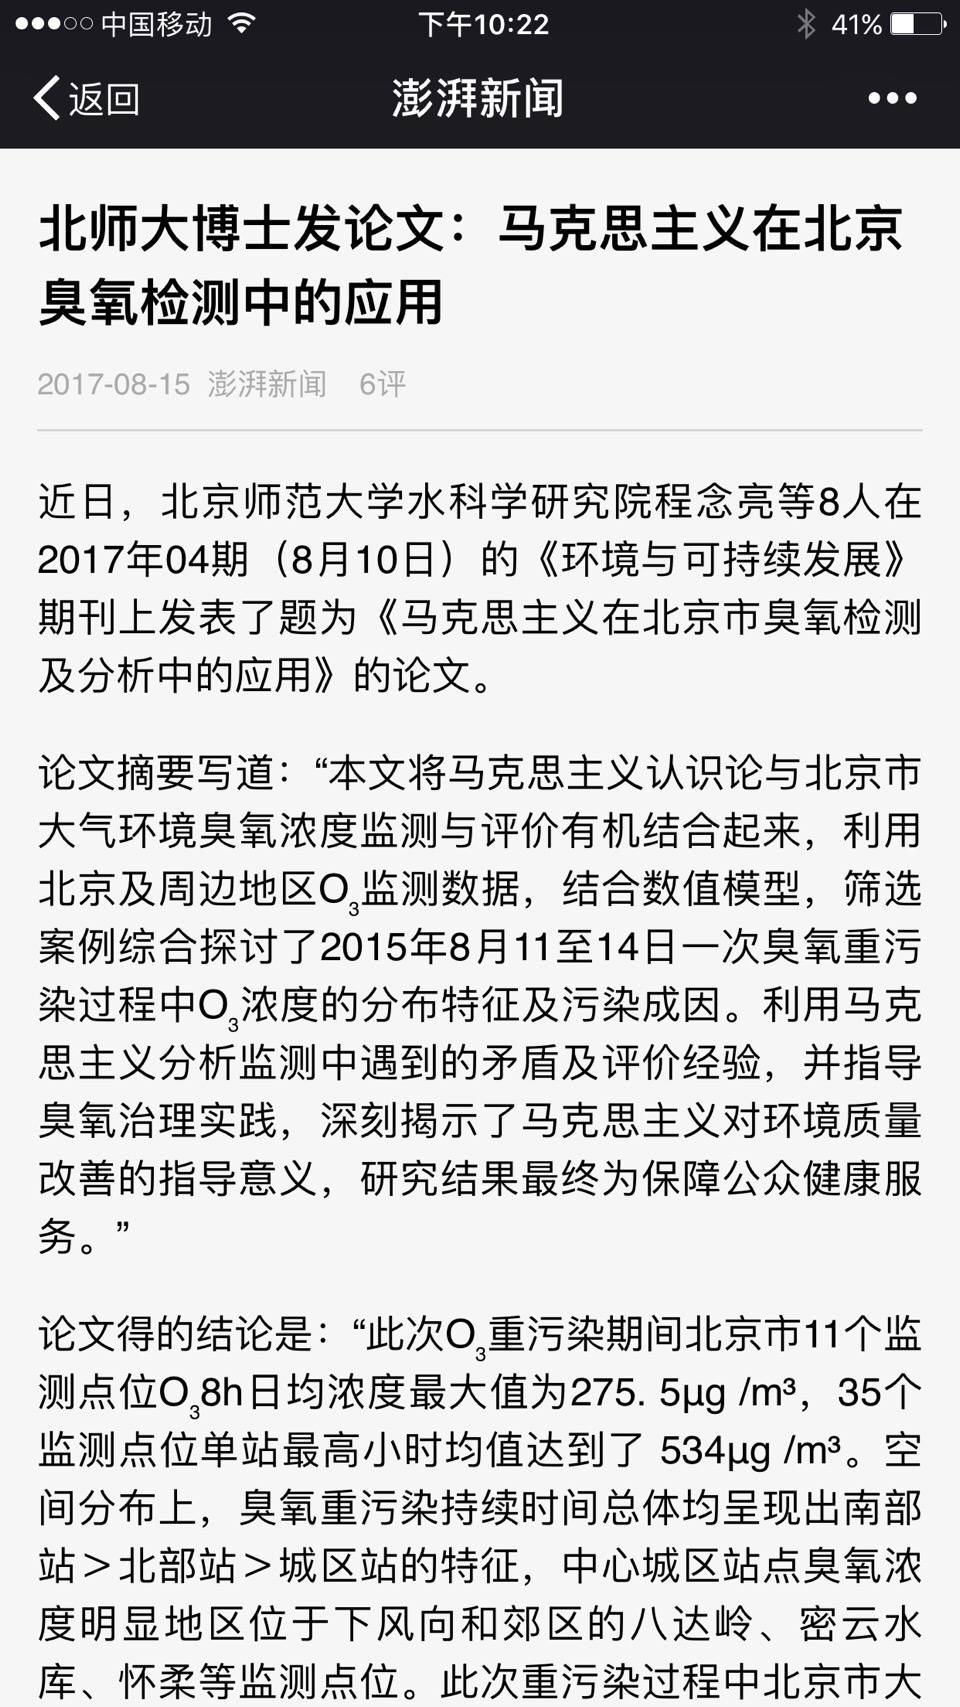 澎湃新聞網報道了中共科學期刊發表的一篇論文，題為「馬克思主義在北京市臭氧檢測及分析中的應用」，引起軒然大波。（網頁擷圖）